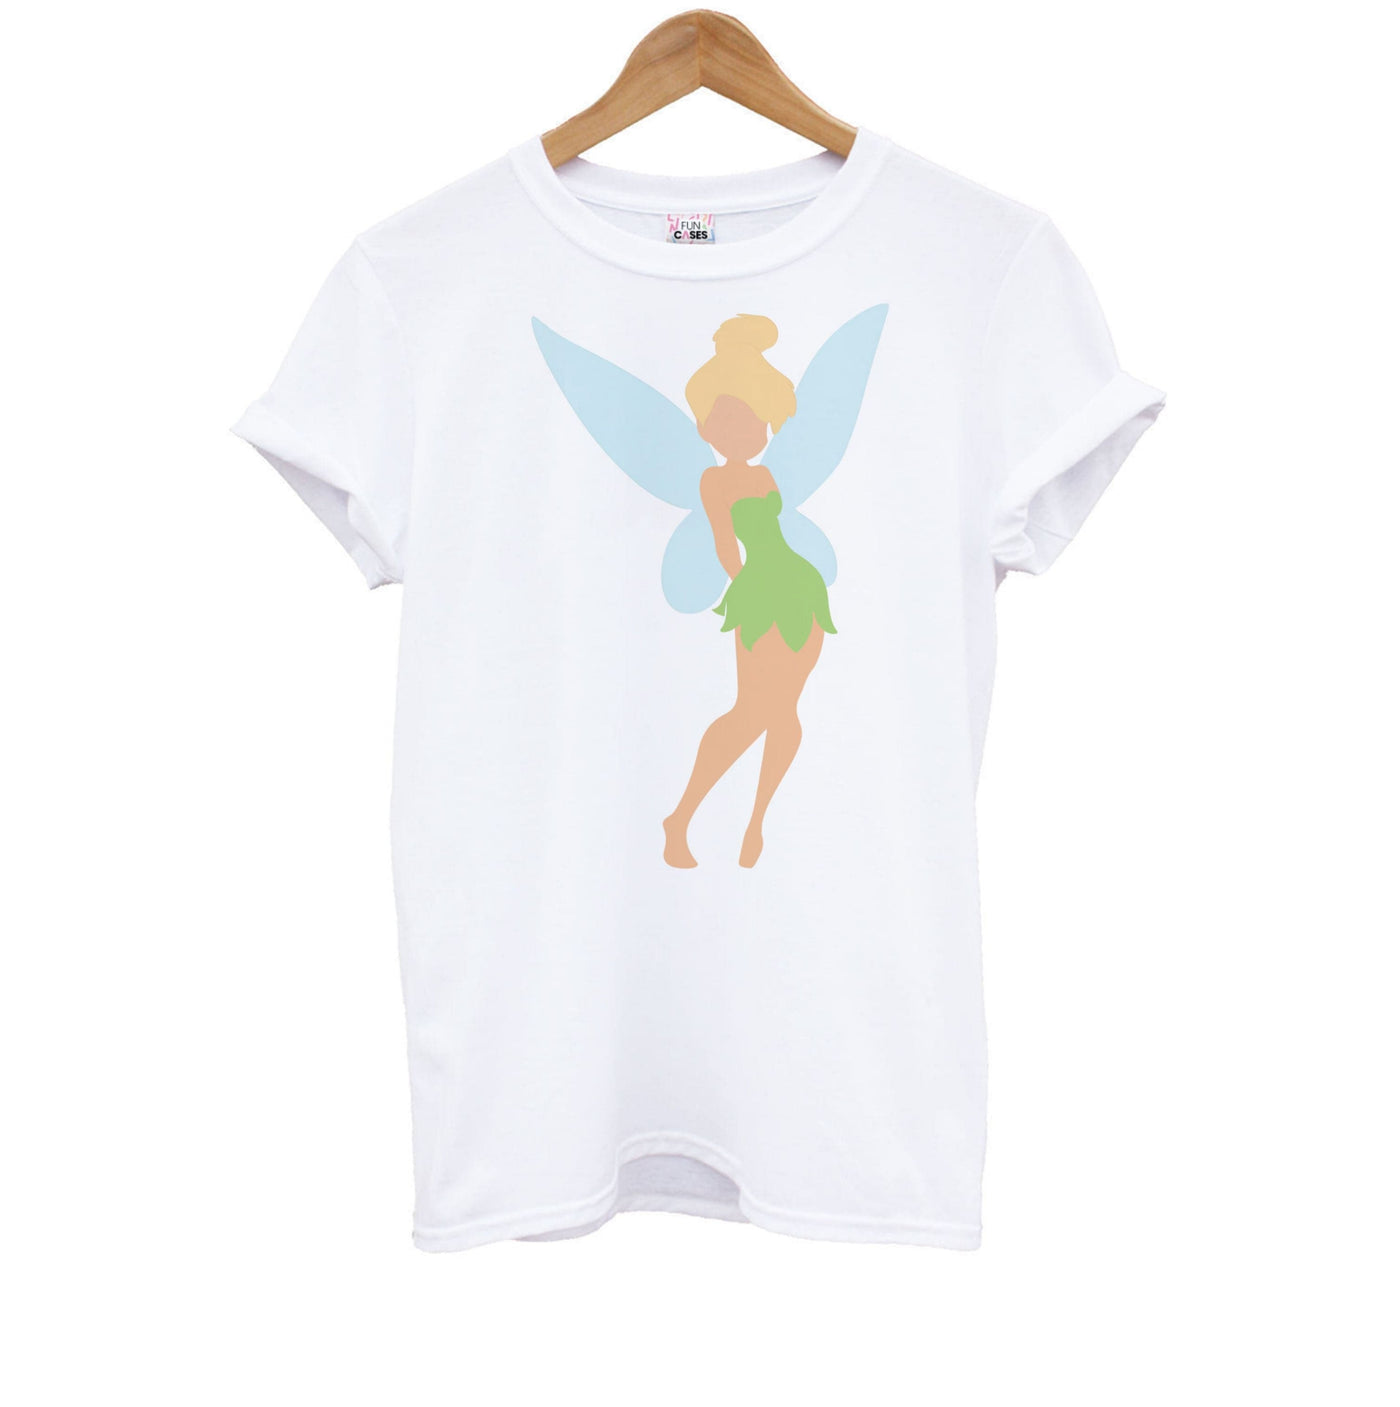 Tinkerbell - Disney Kids T-Shirt